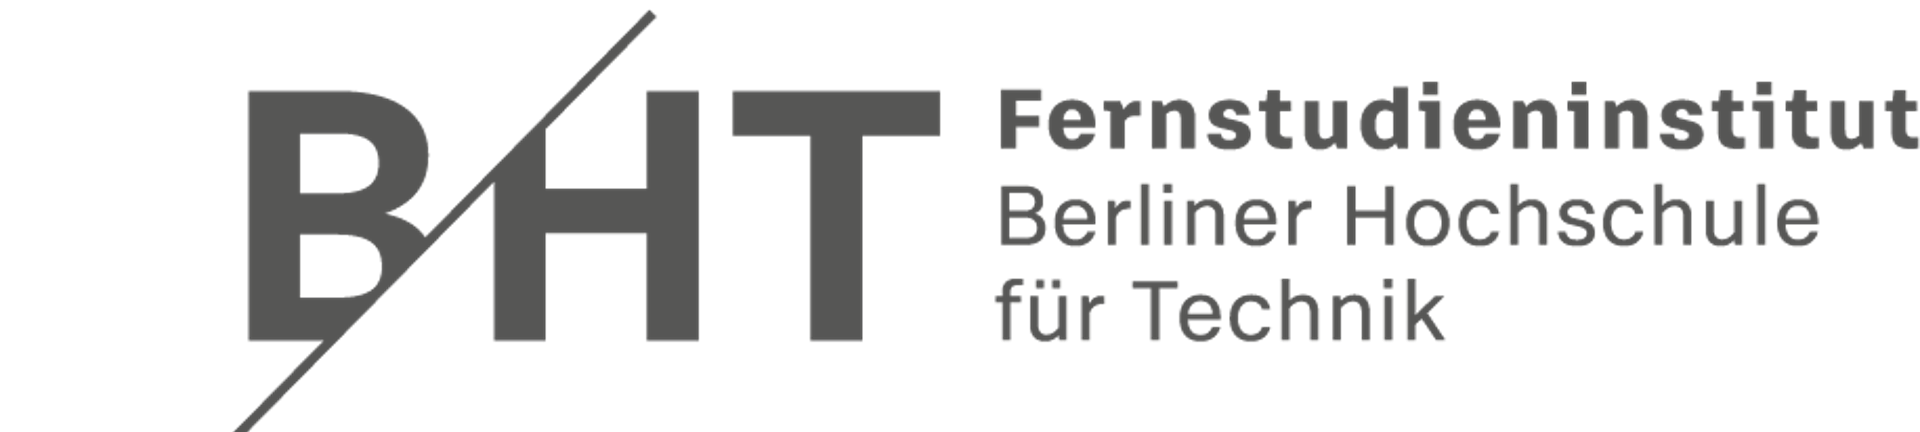 Notfall Website des Fernstudieninstituts der Berliner Hochschule für Technik